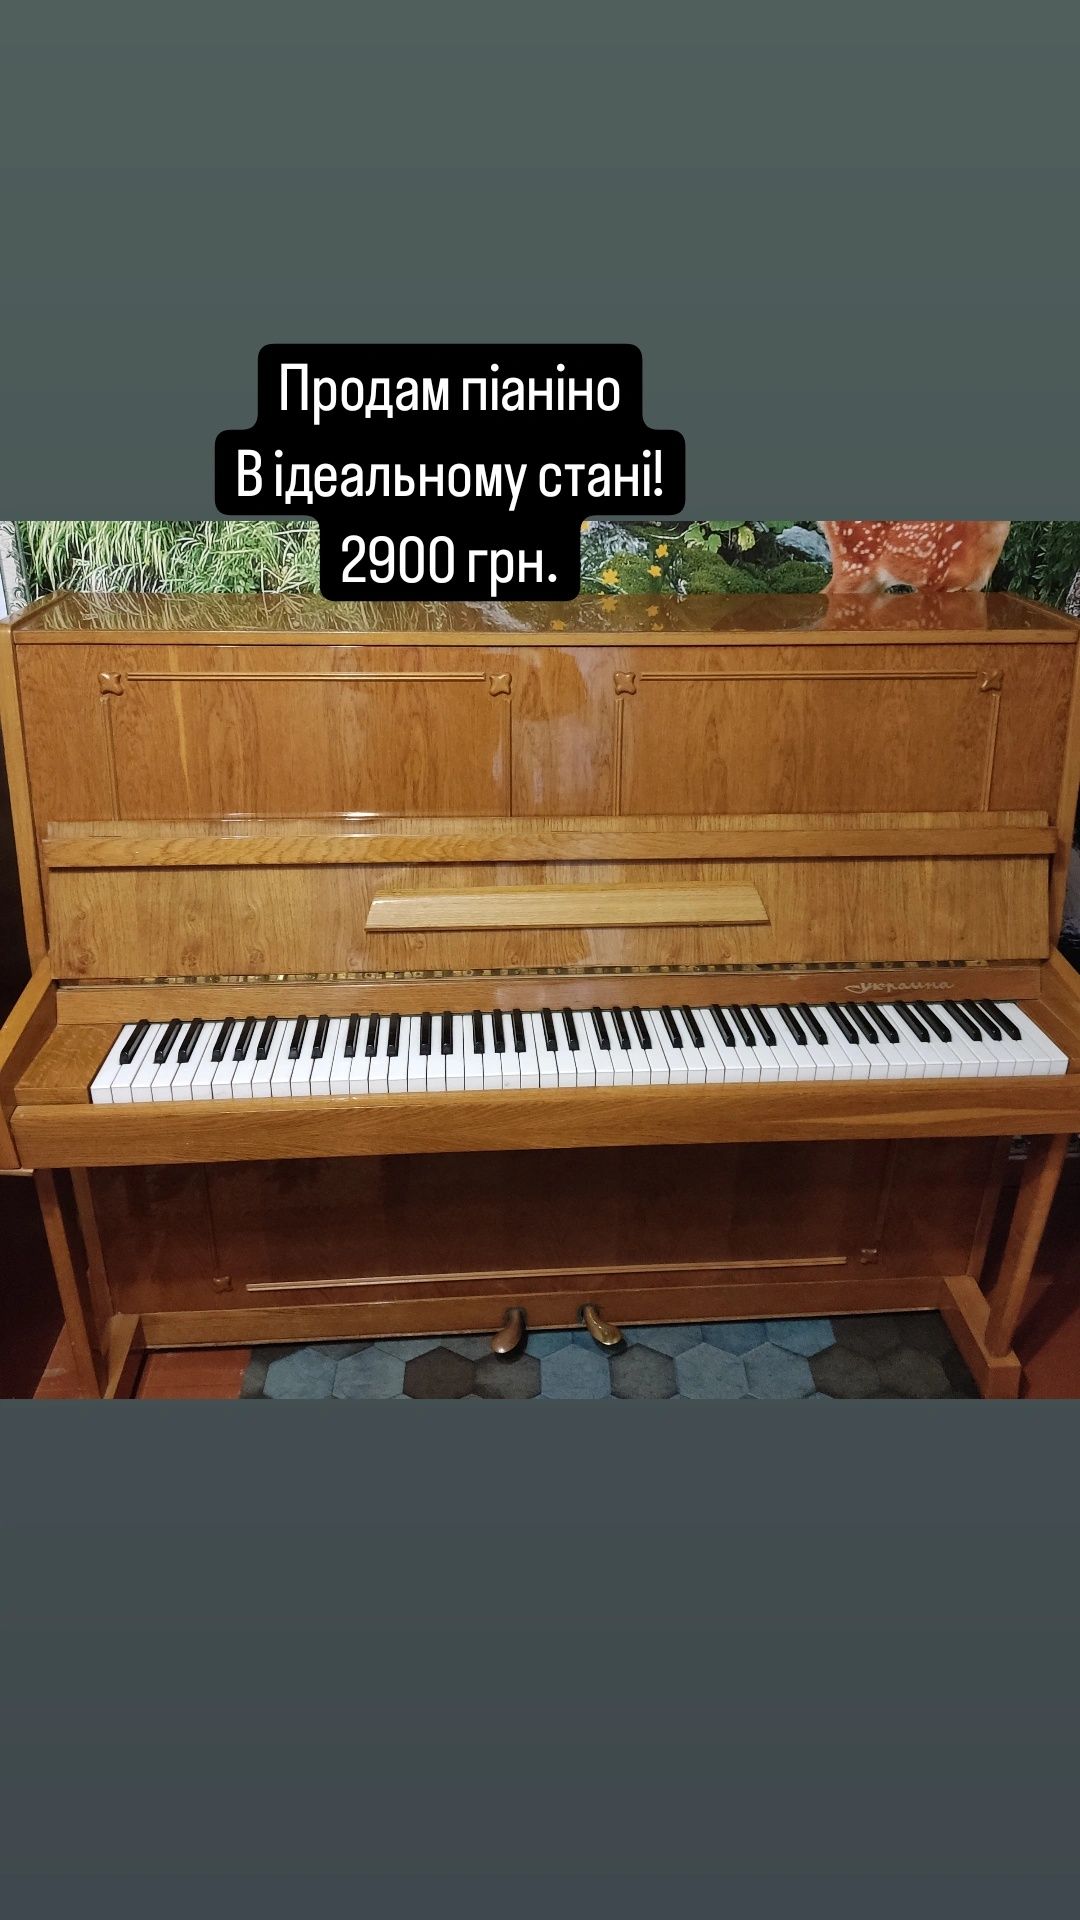 Піаніно в ідеальному стані -2900 грн.